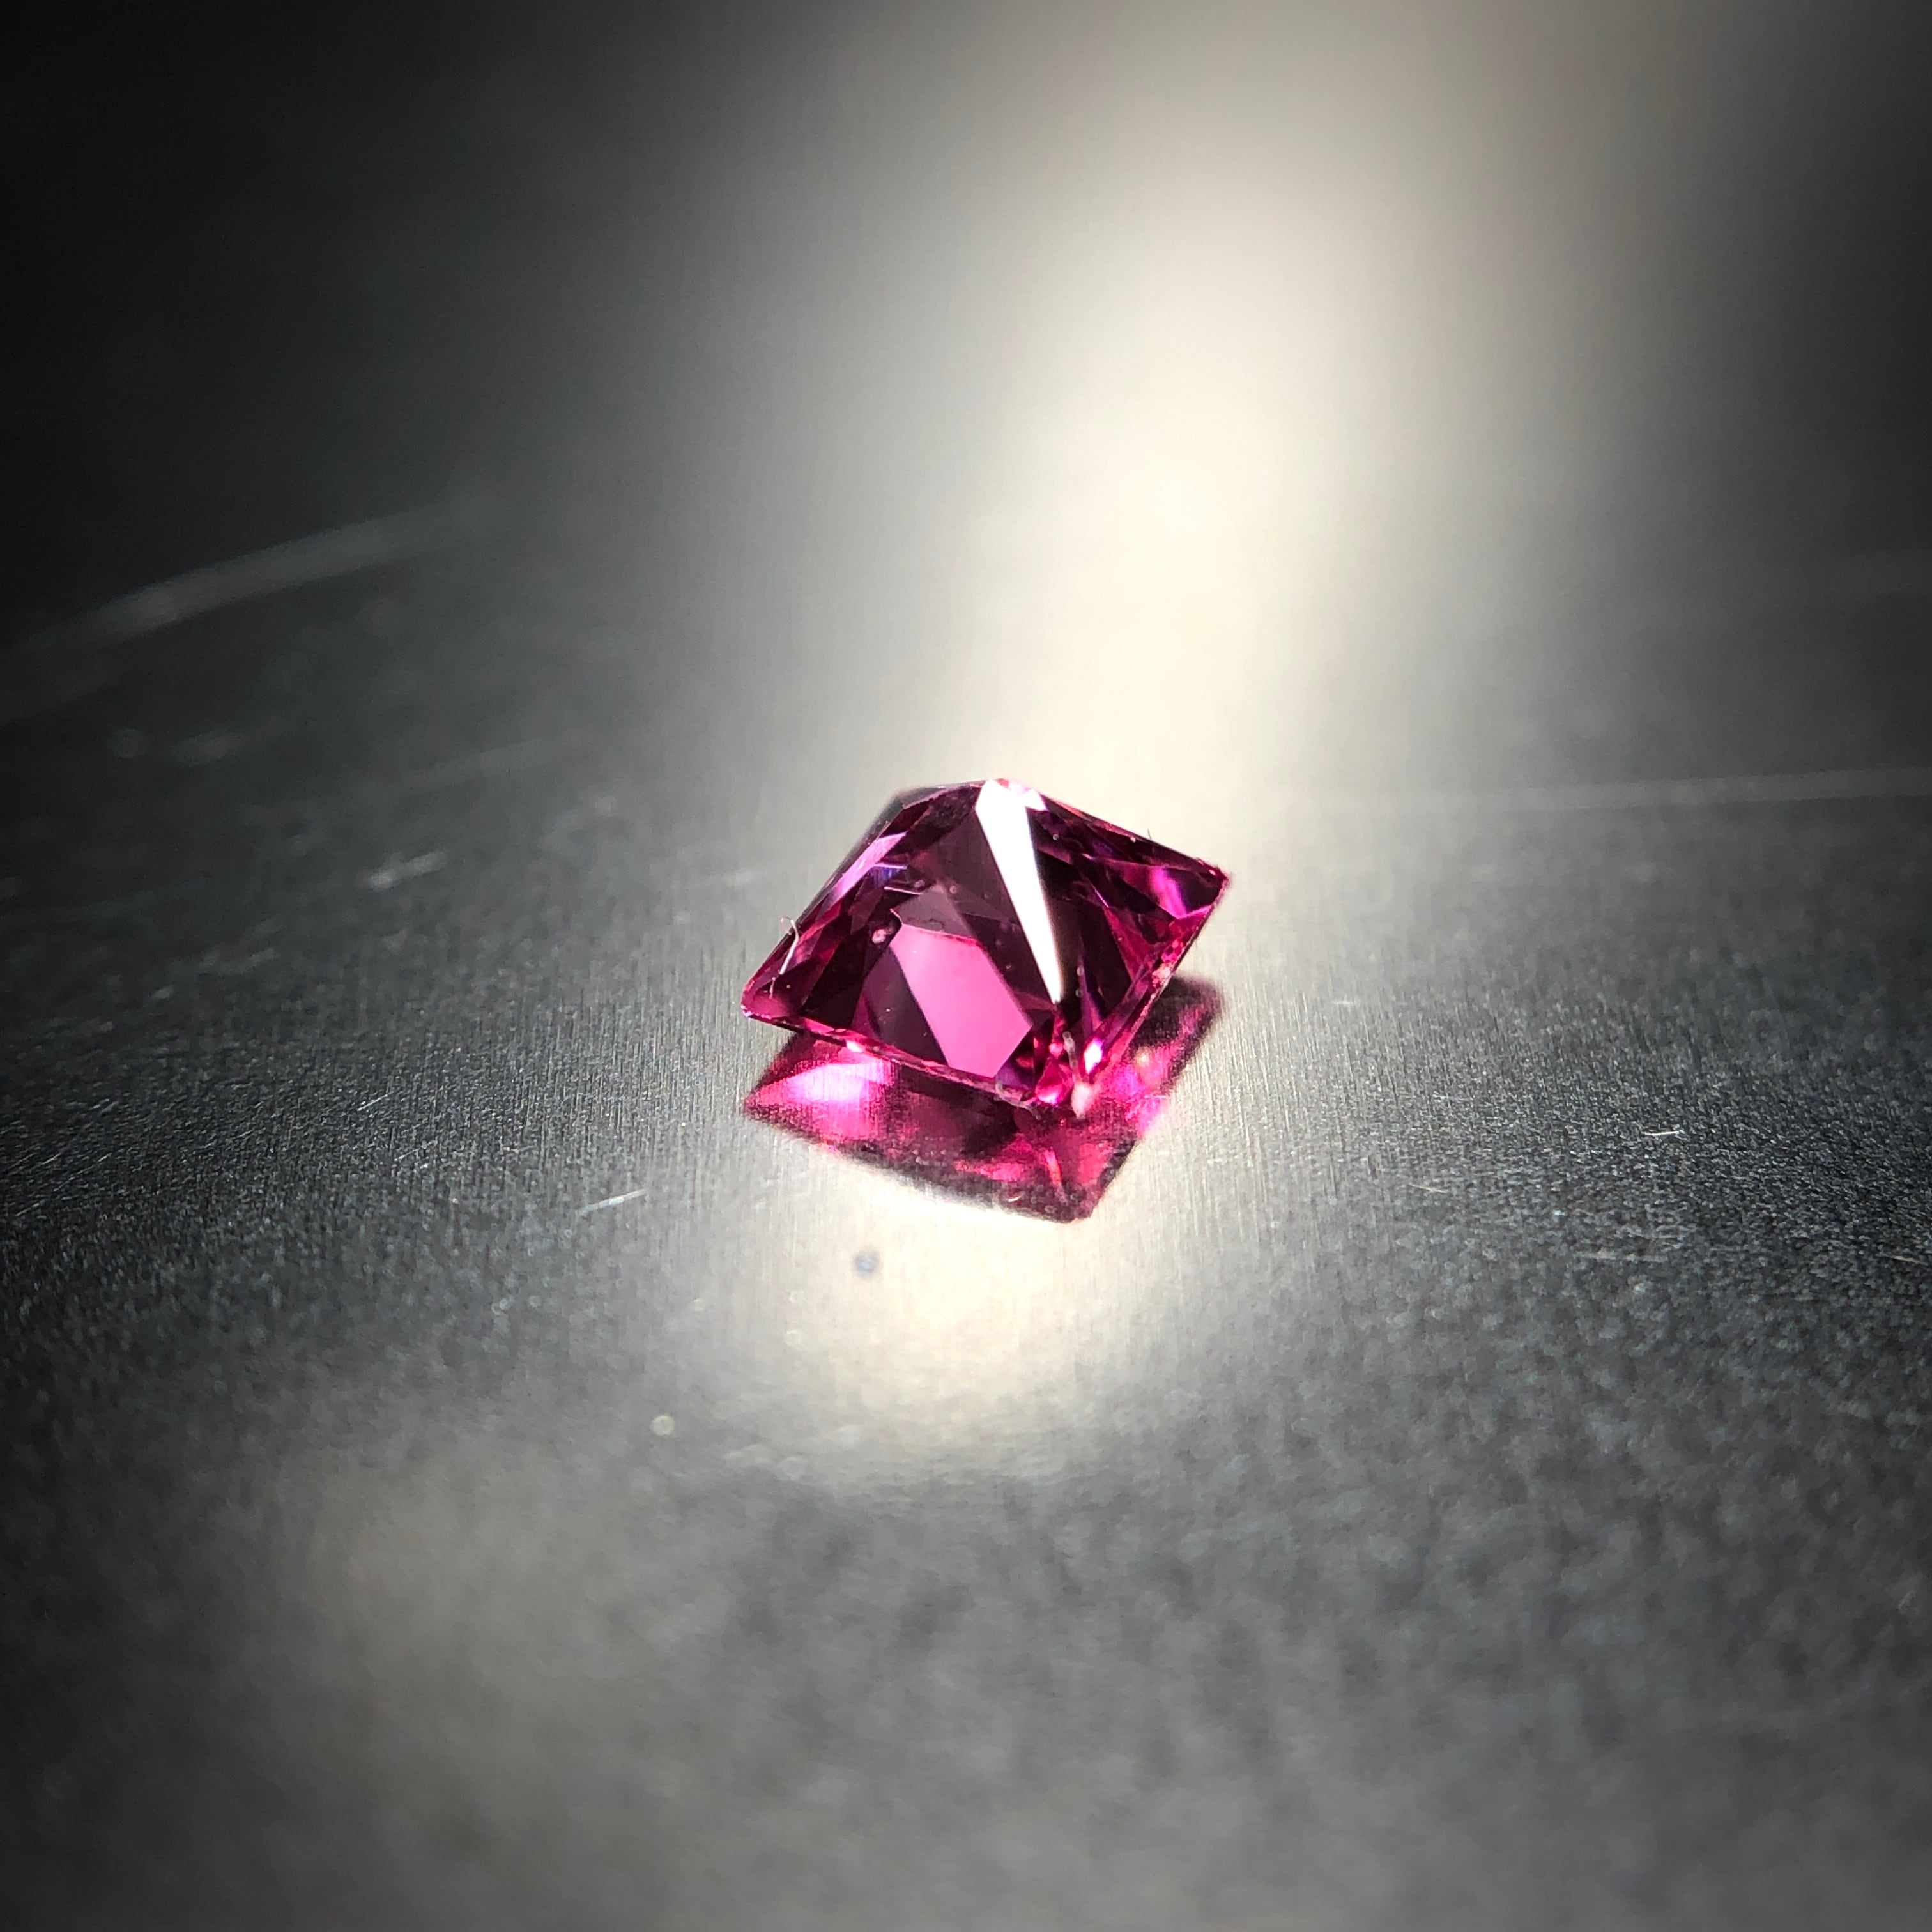 ネオン溢れるホットピンクカラー 0.24ct タンザニア産 天然 アヤナスピネル | Frederick’s Gems&Jewelry powered  by BASE